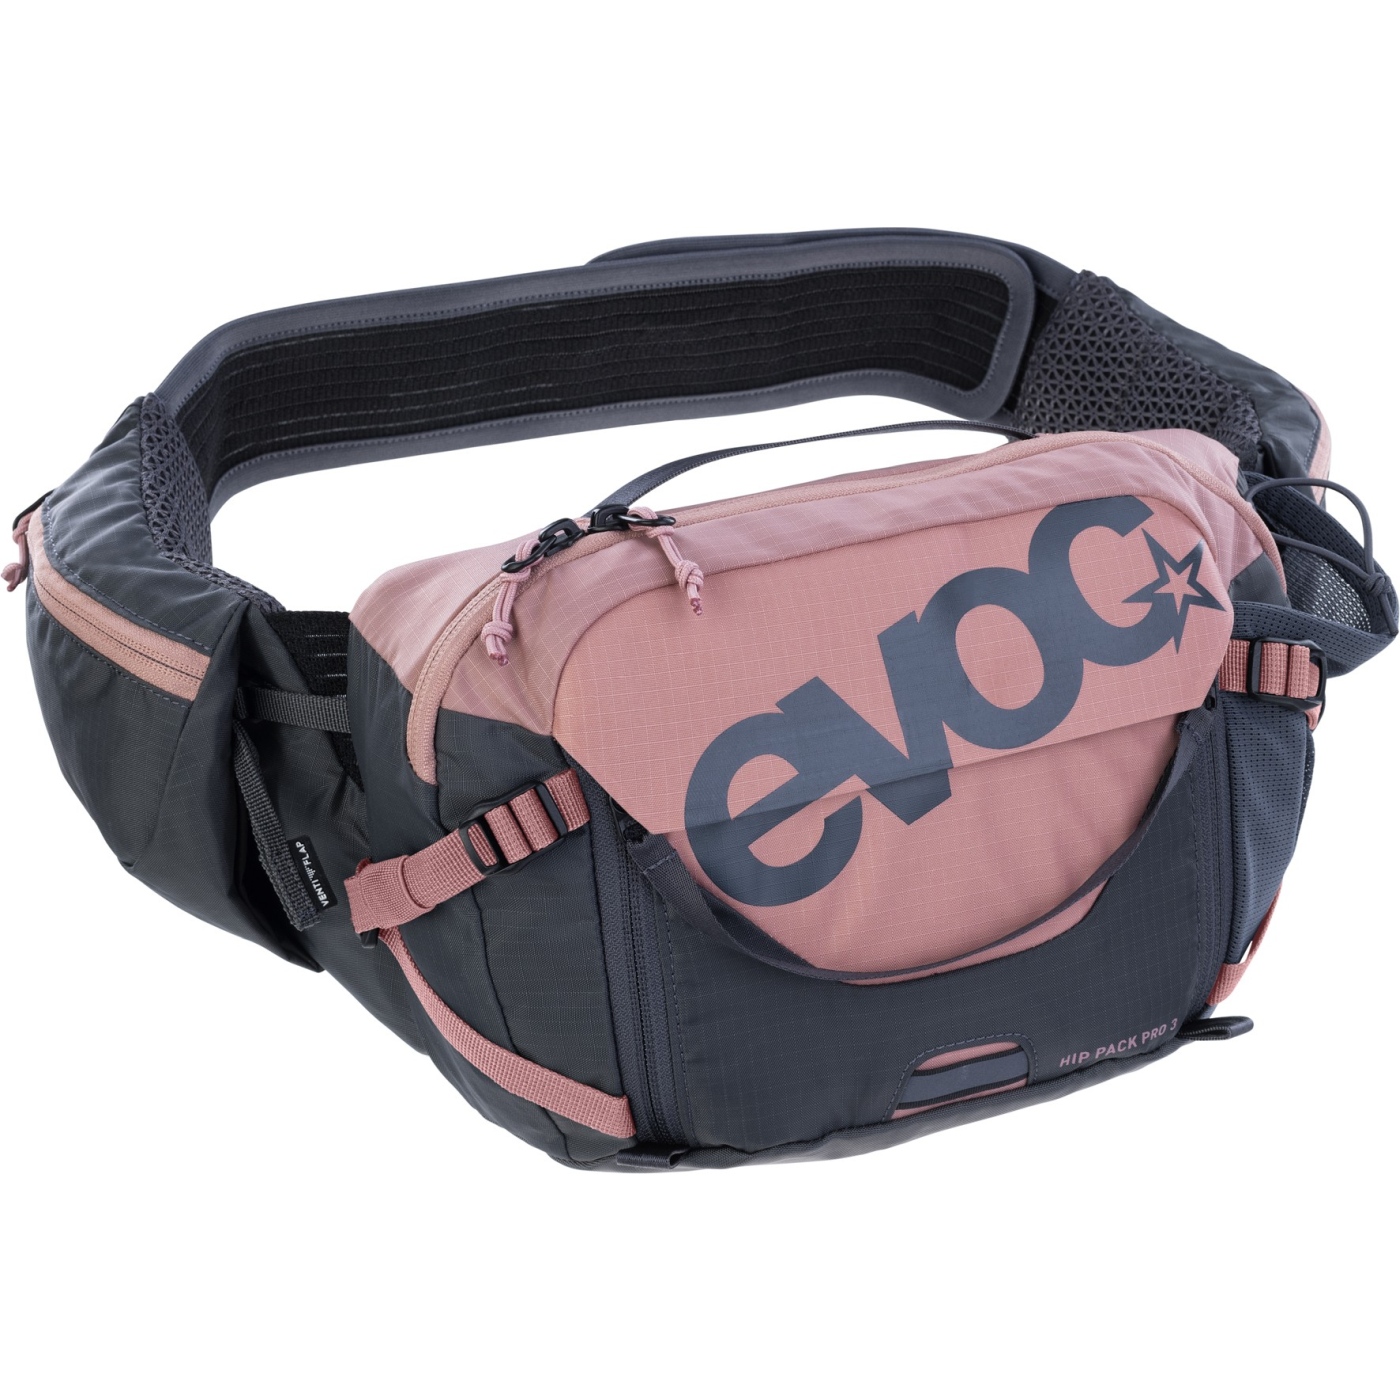 Produktbild von EVOC Hip Pack Pro 3 L Hüfttasche + 1.5 L Trinkblase - Dusty Pink - Carbon Grey